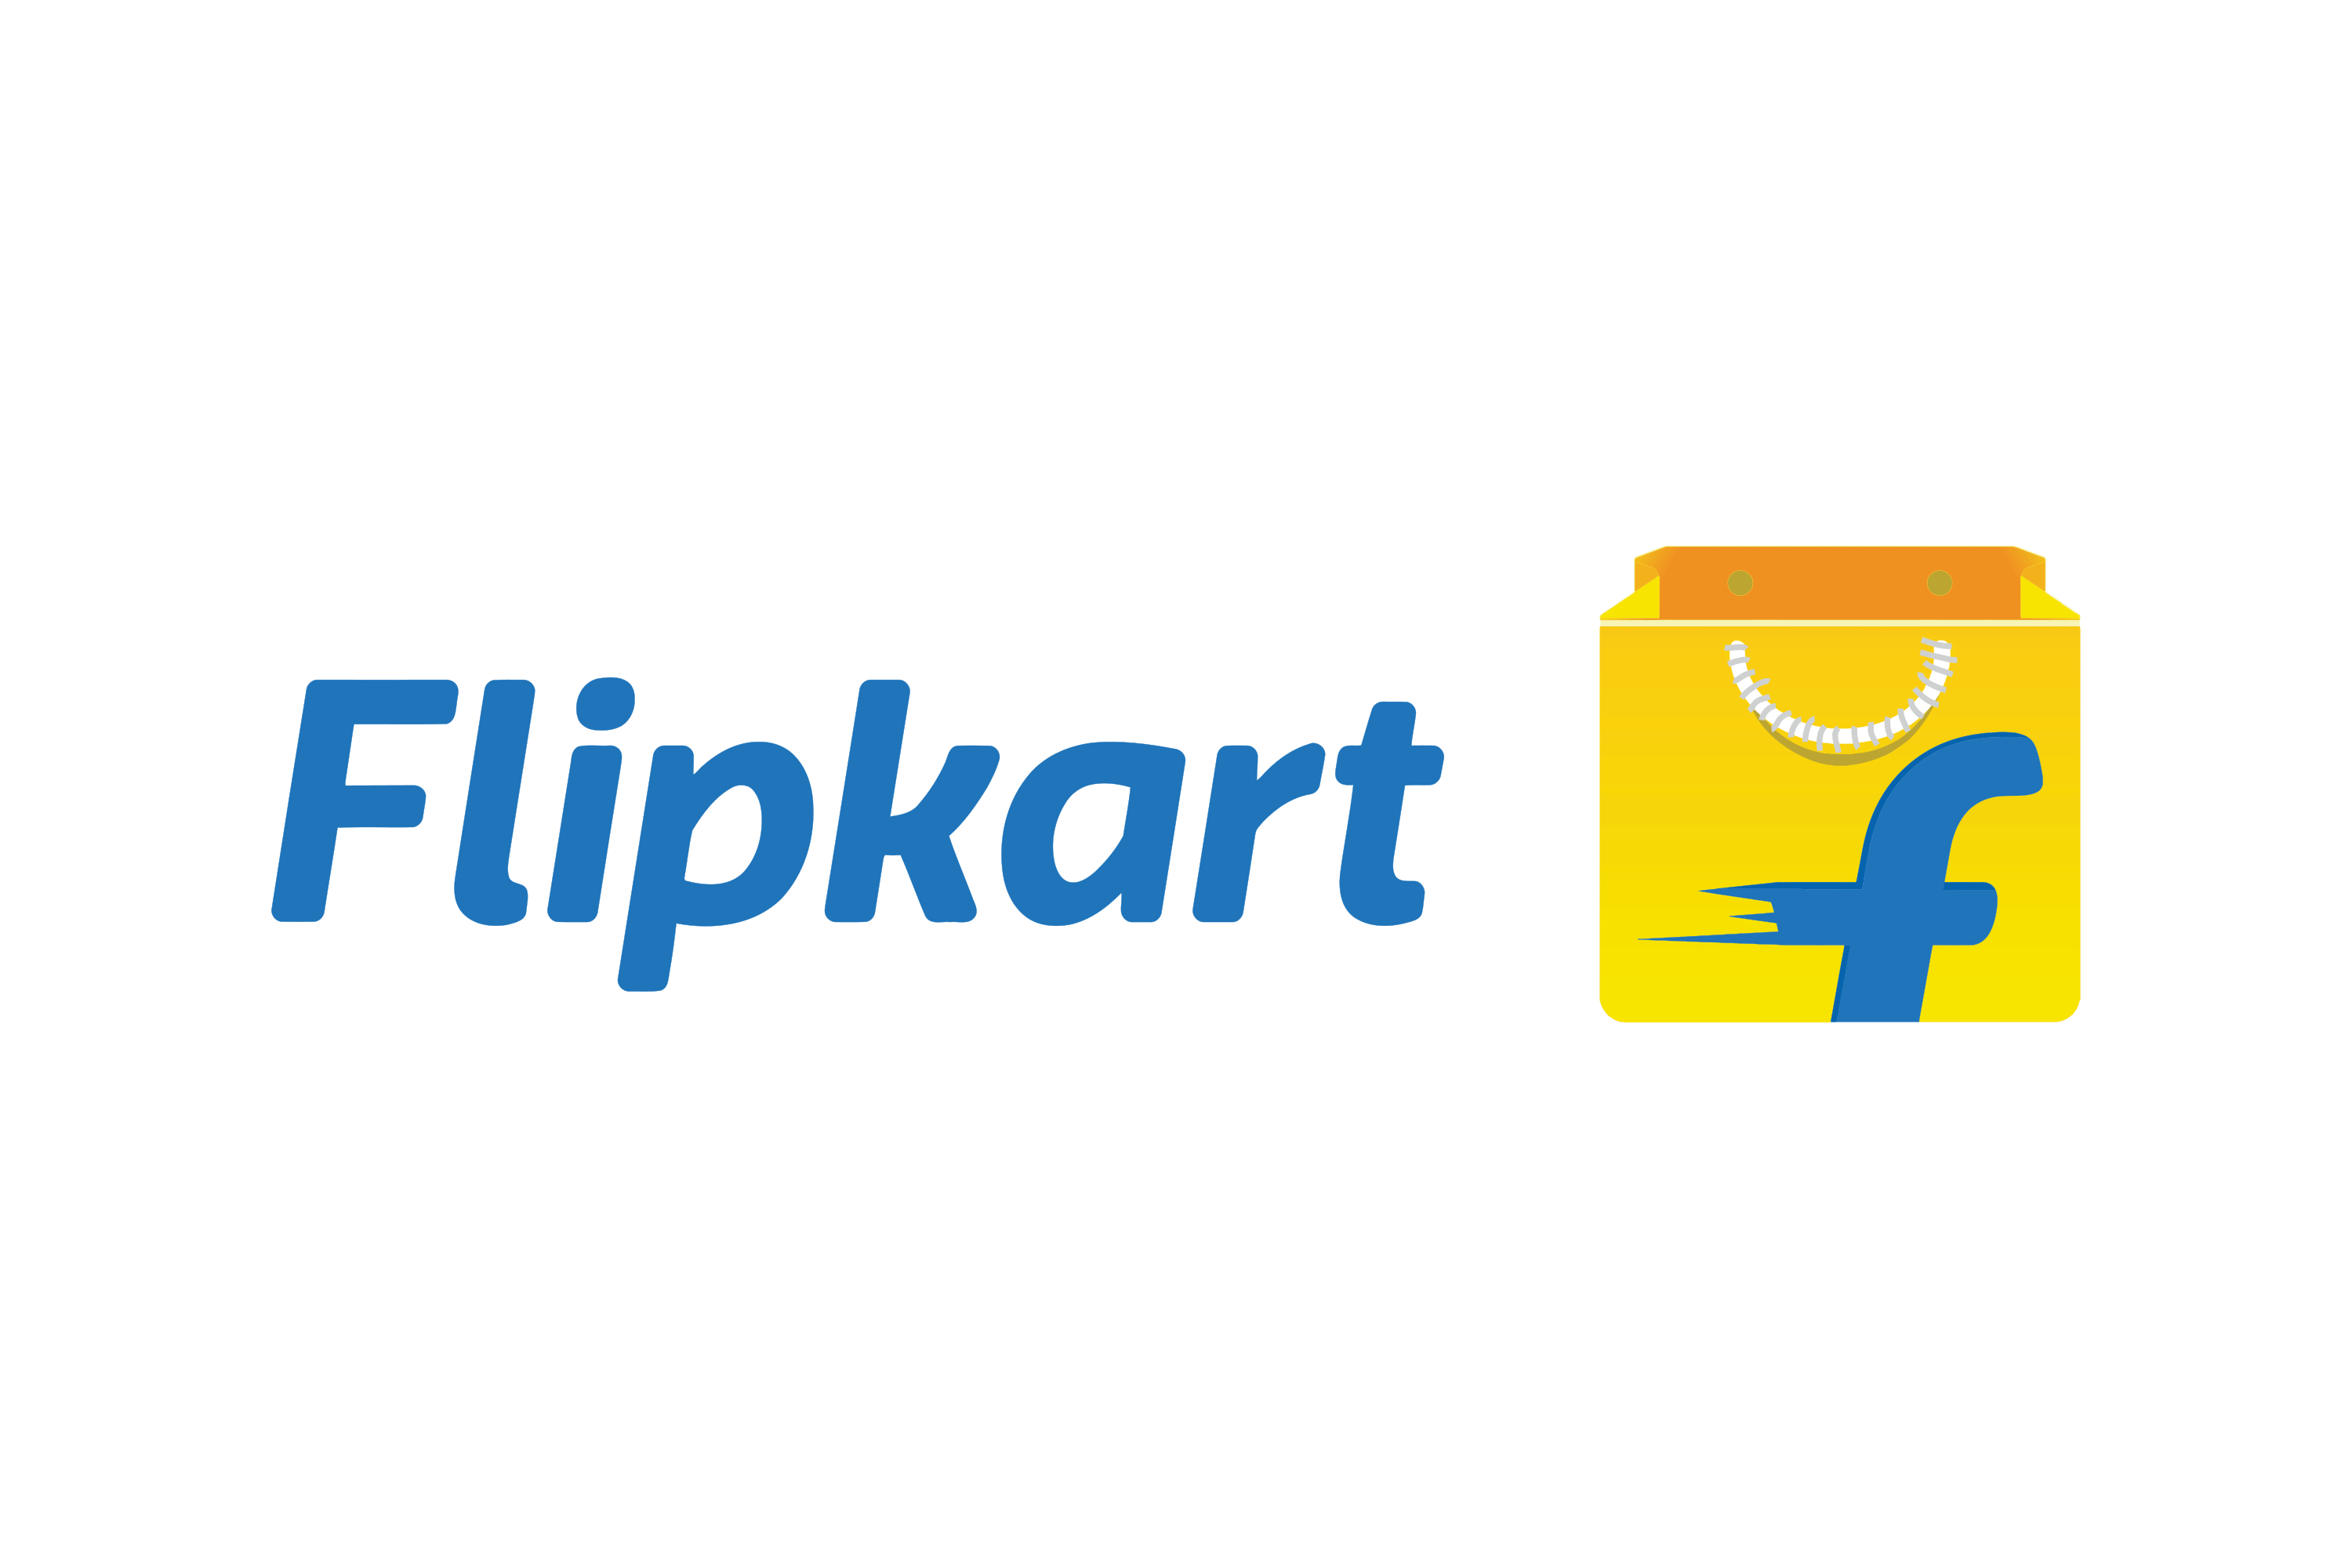 download flipkart in online